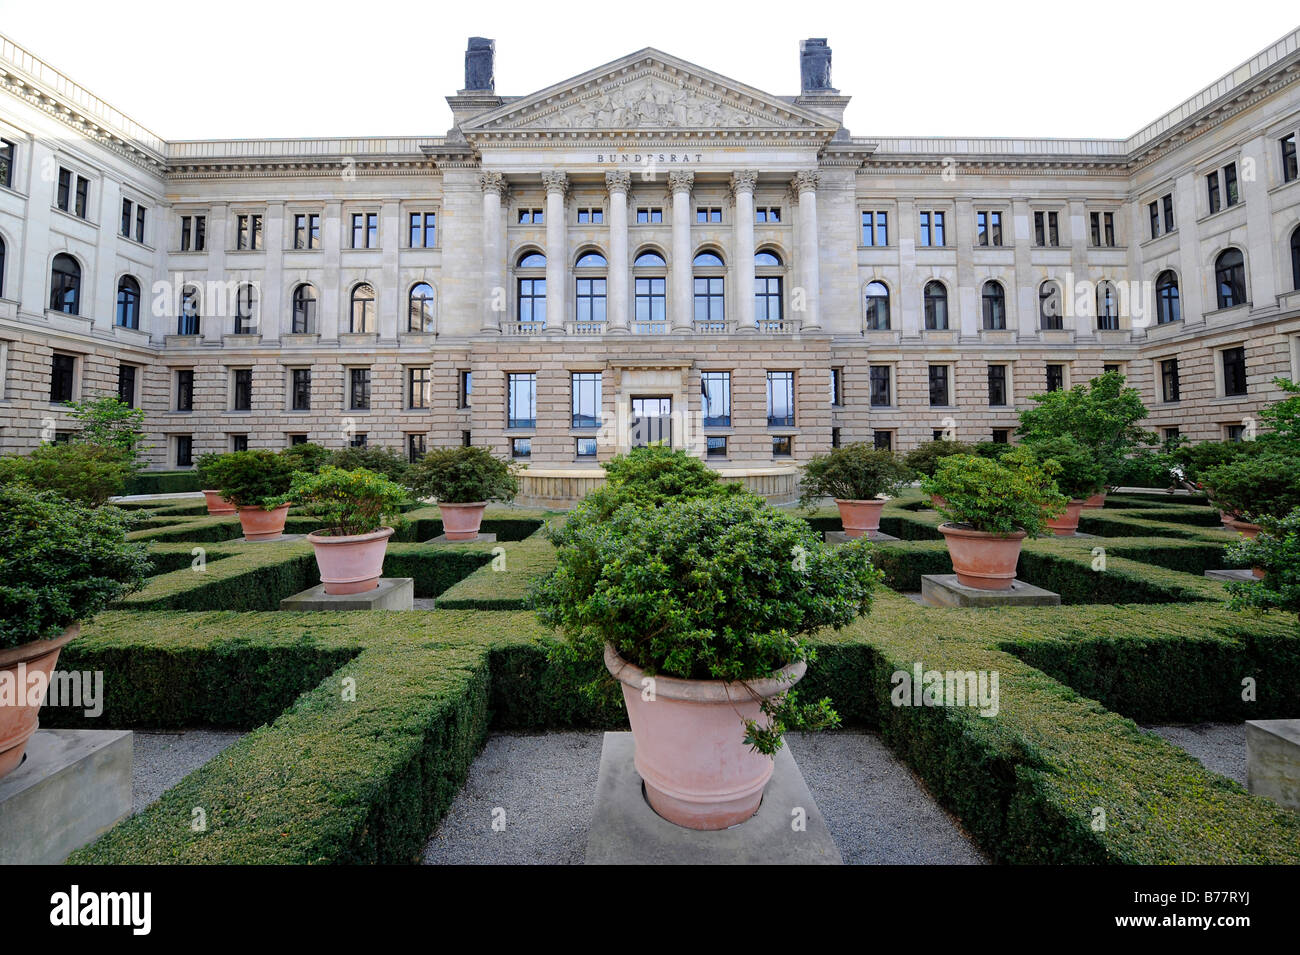 Bundesrat bâtiment et jardins, la chambre haute du parlement allemand, Berlin, Germany, Europe Banque D'Images